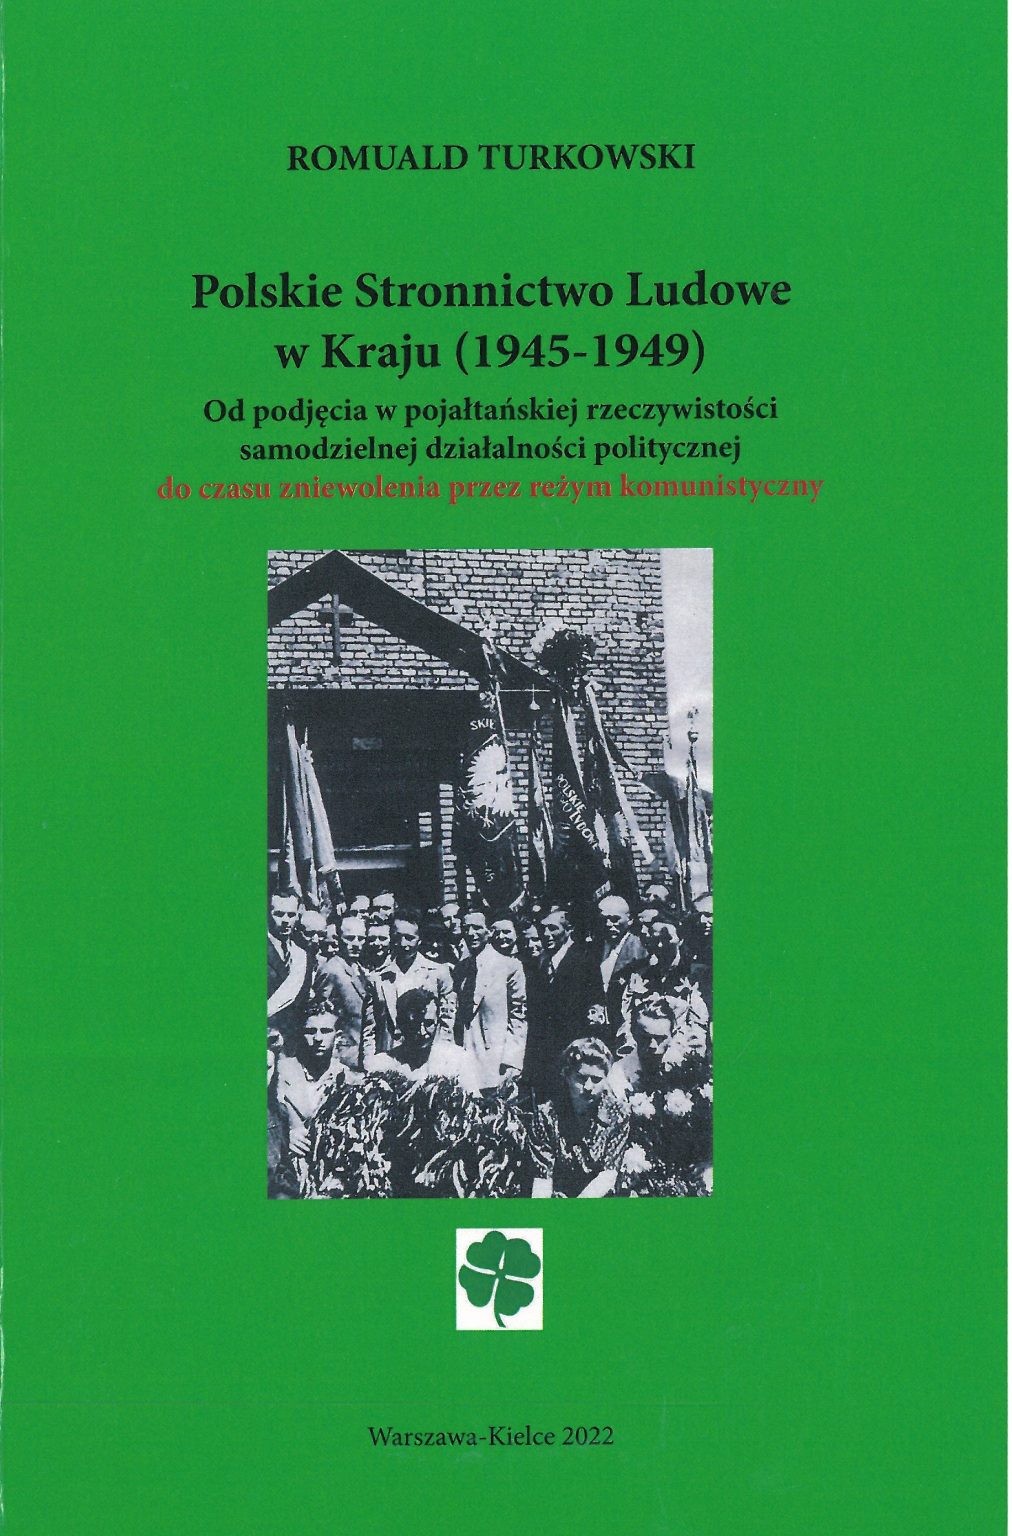 Polskie Stronnictwo Ludowe w Kraju (1945-1949)(R.Turkowski)